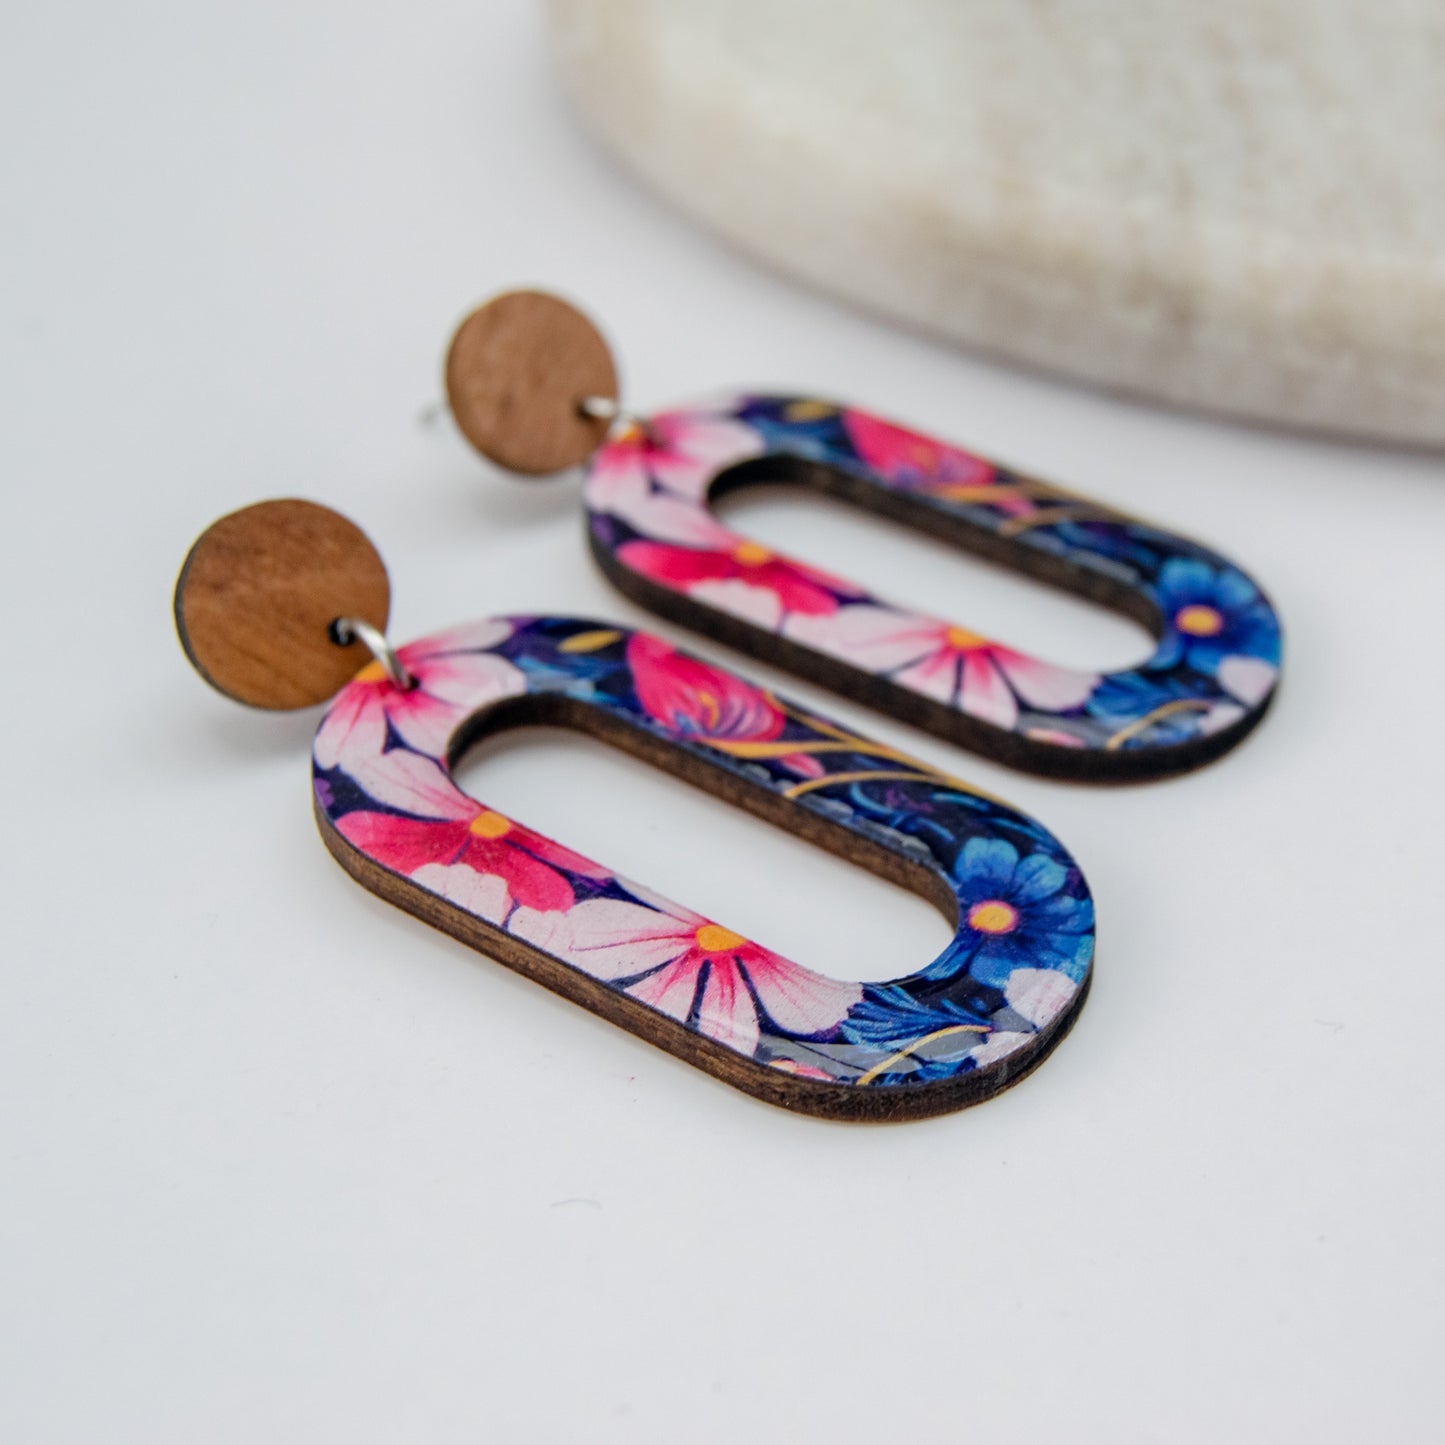 Mila - Fleurige houten statement oorbellen met prachtige bloemenprint in blauw en roze tinten